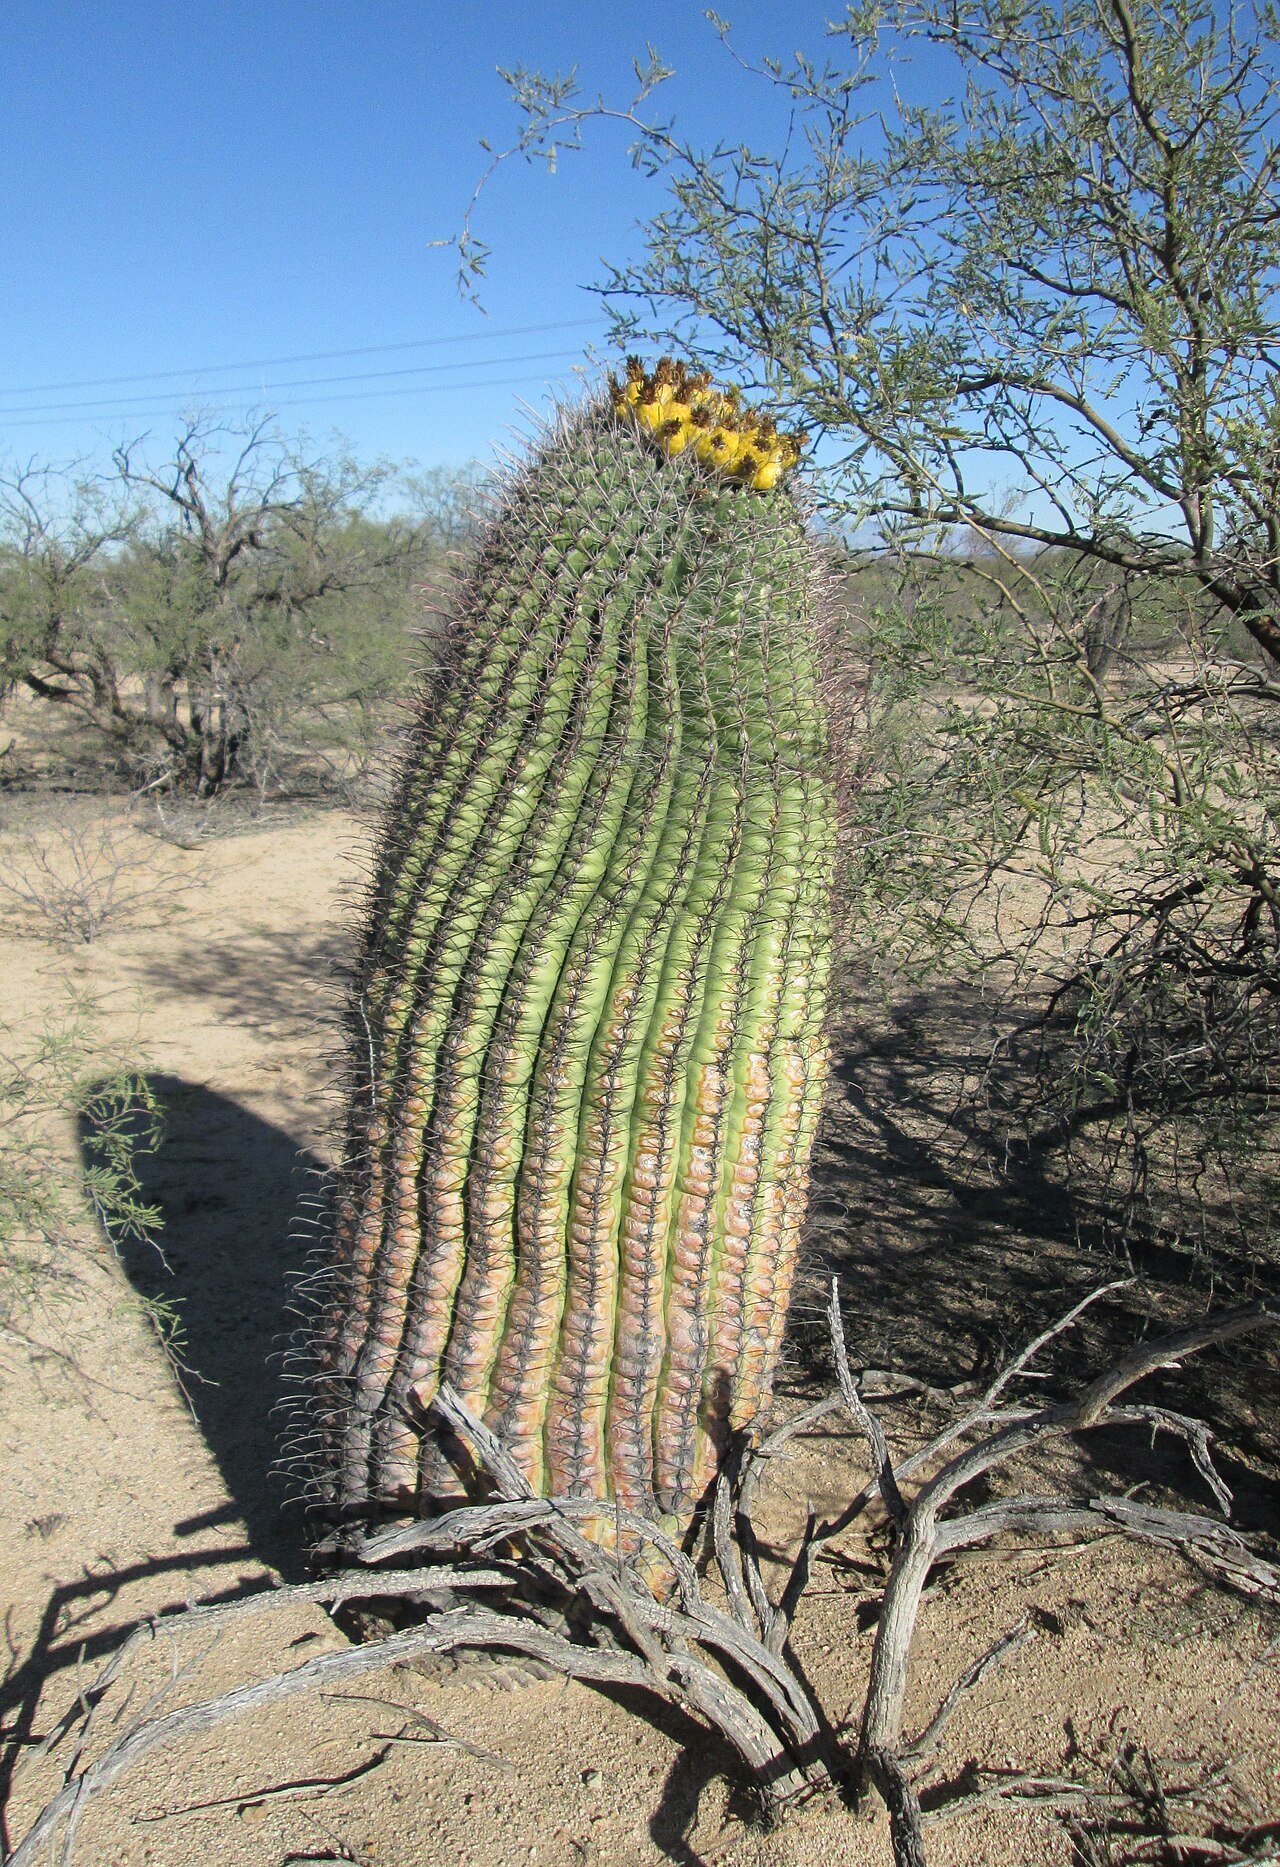 Fish-Hook Barrel Cactus